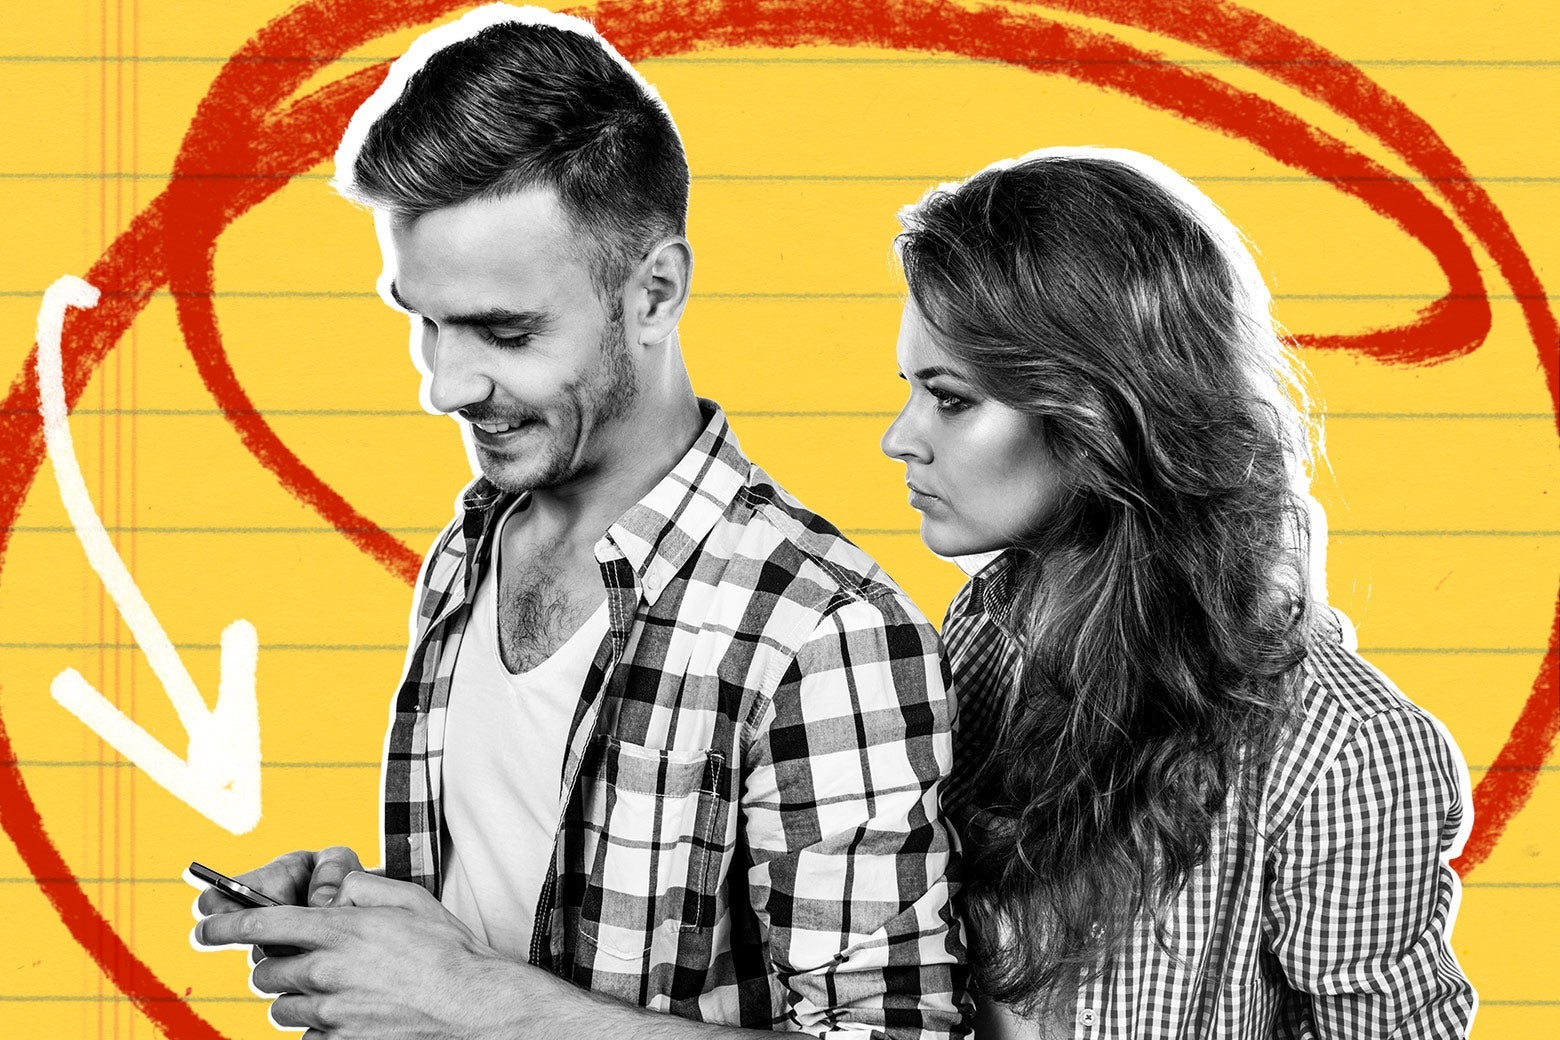 A man looking at his phone smiling and a woman glaring at him